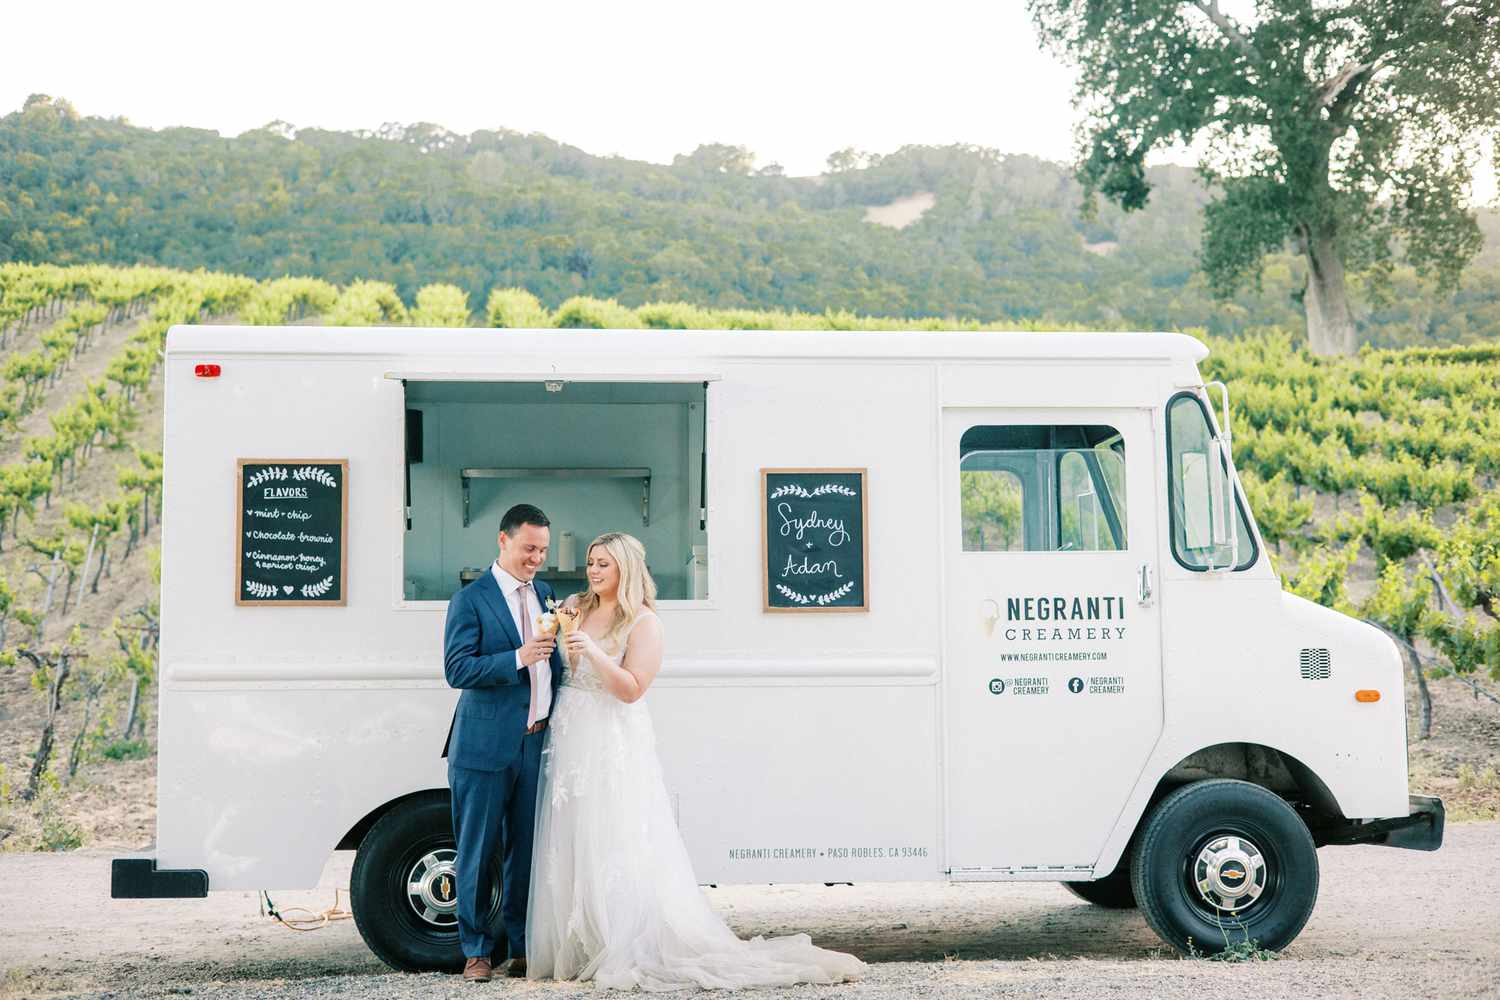 couple holding ice cream cones by creamery truck